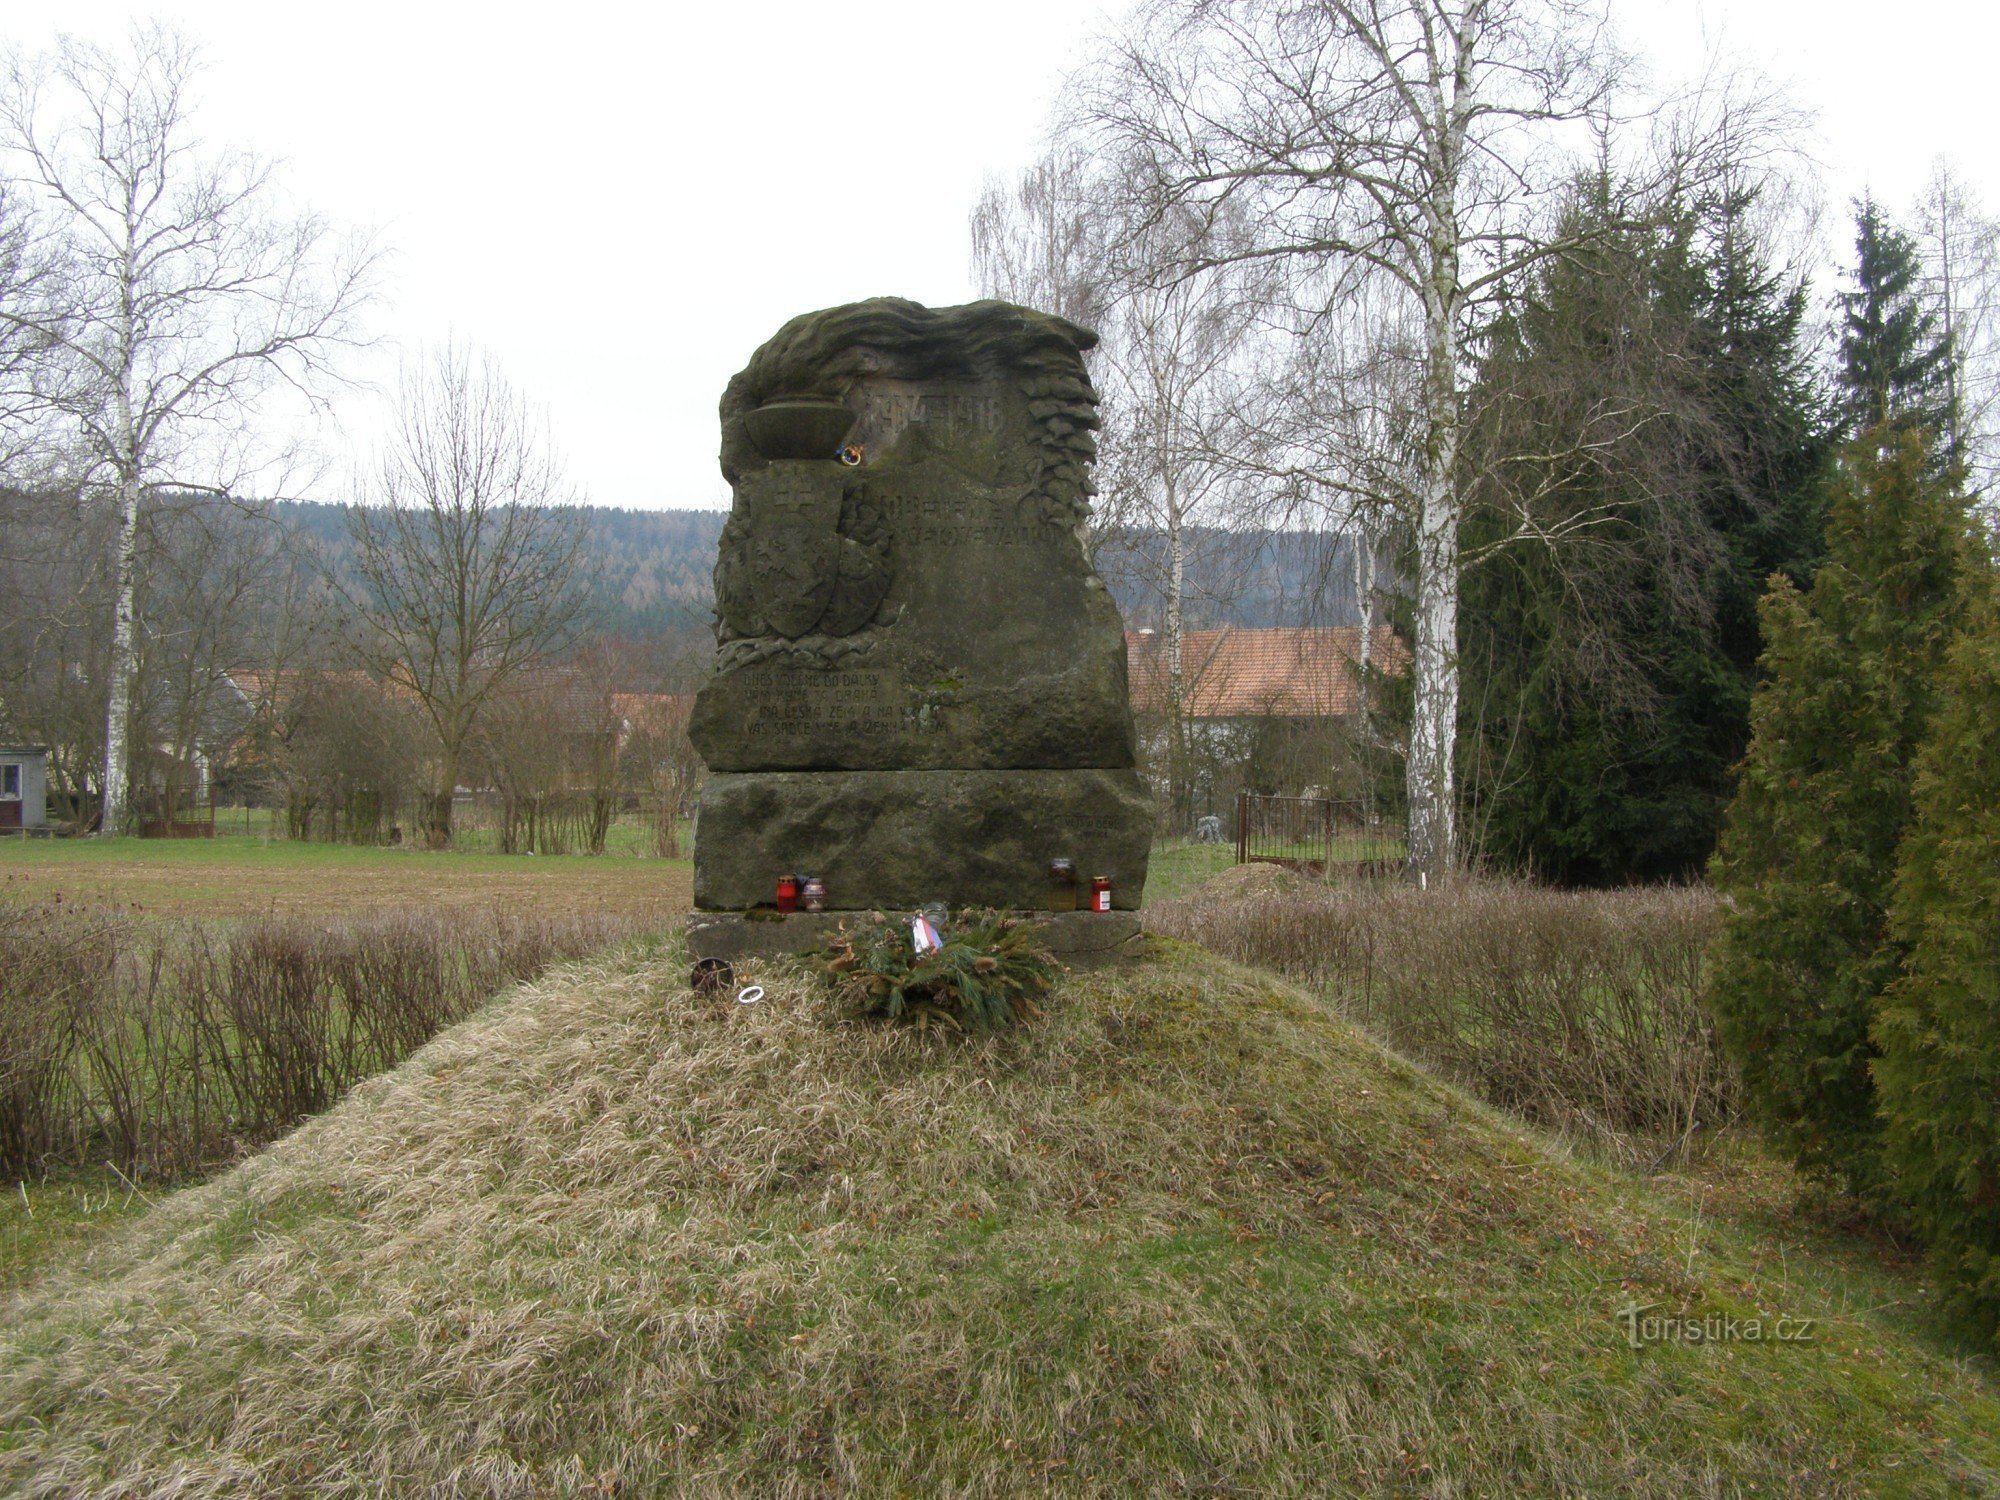 Lukavec u Hořice - monument til ofrene for 1st St. krig